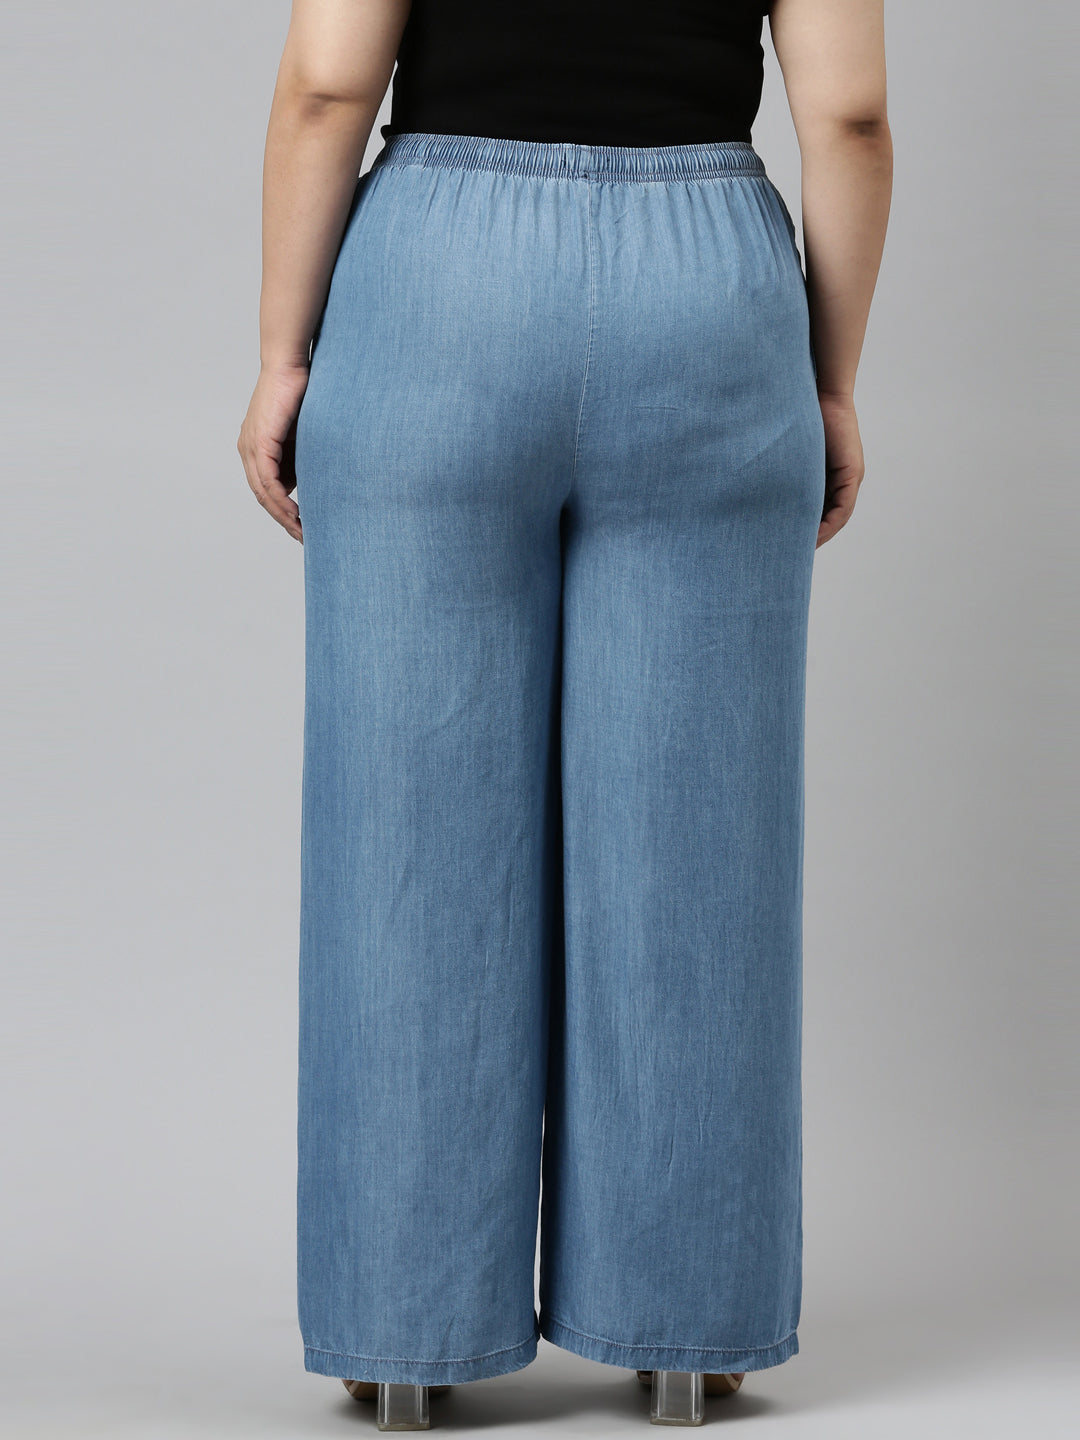 Wide Leg Pocket Flow Pants | Lightweight Cotton Women's Pants | CARAUCCI